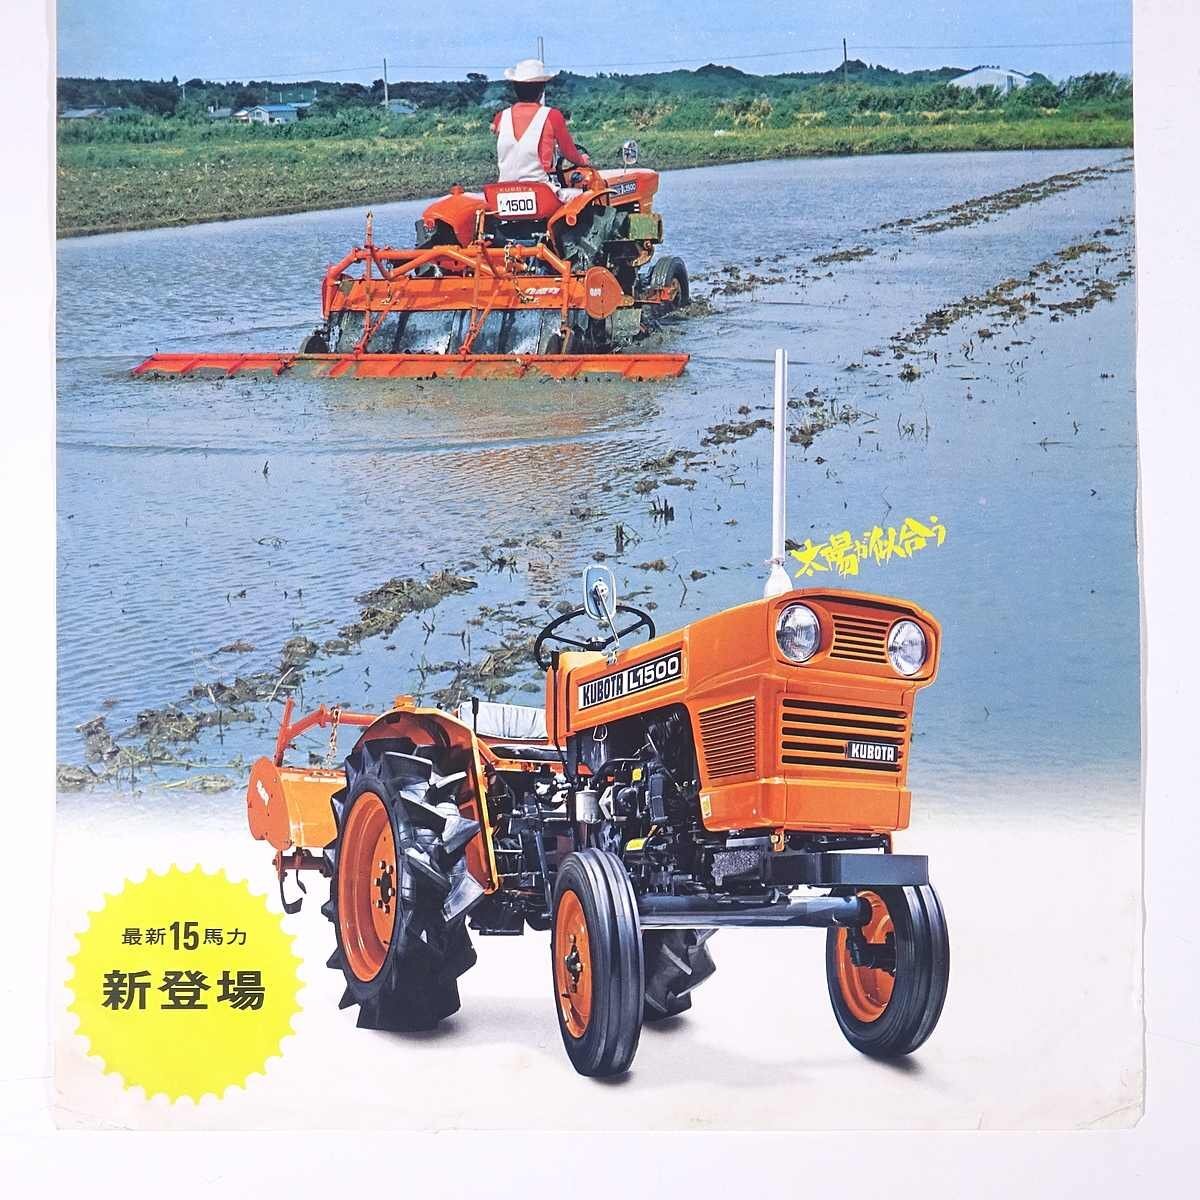 Kubota Kubota tractor L1500 15 лошадиные силы Kubota металлоконструкция 1970 год примерно Showa каталог проспект земледелие сельское хозяйство сельское хозяйство дом механизм 